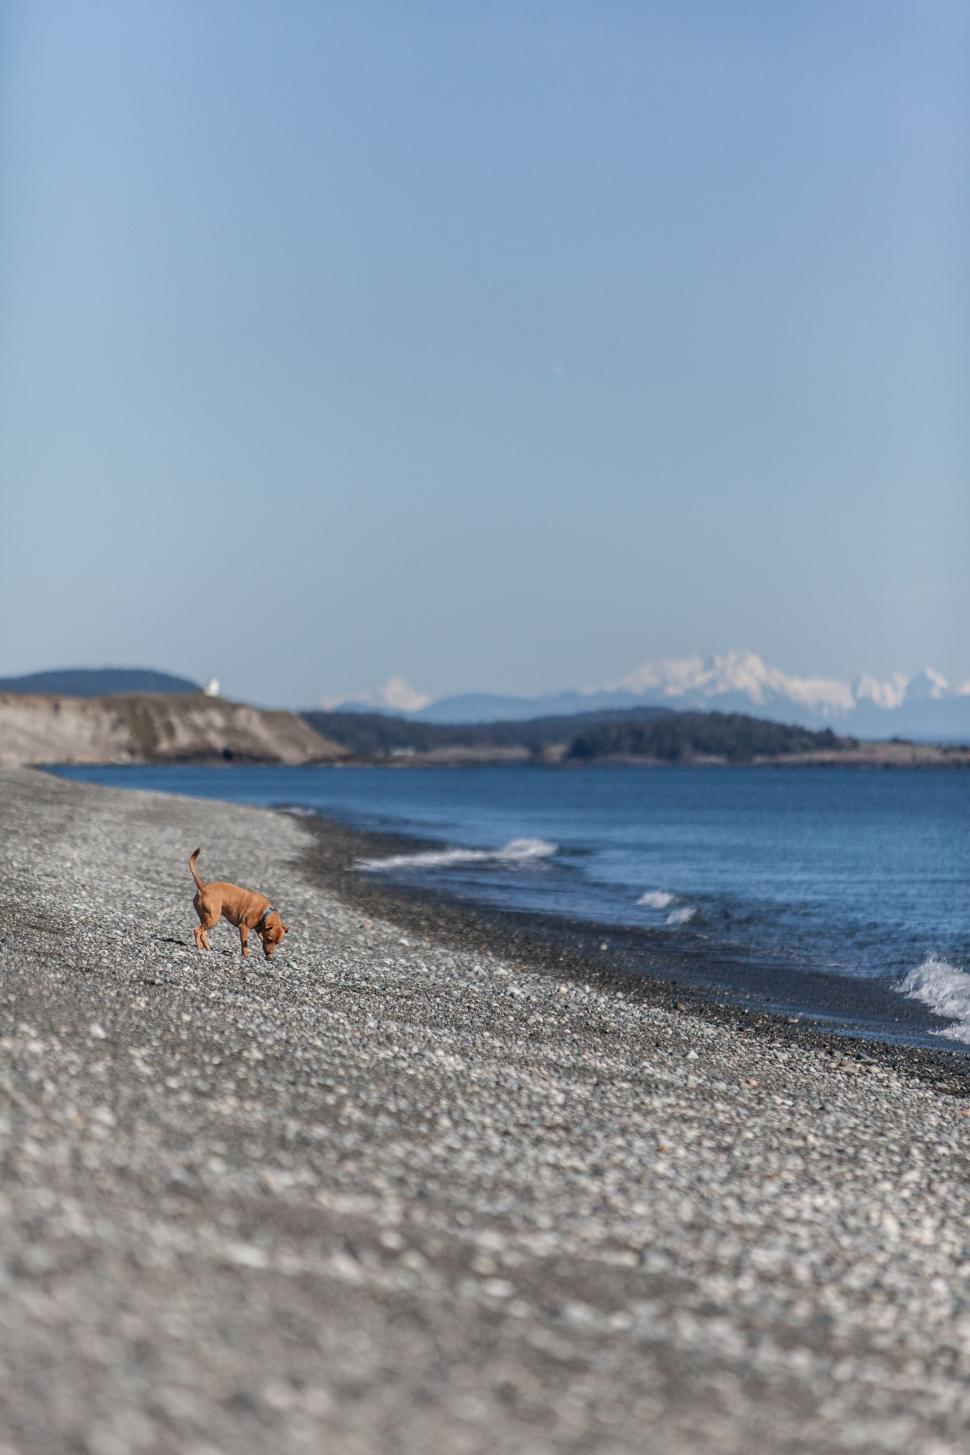 Free Image of Dog Walking on Beach Next to Ocean 